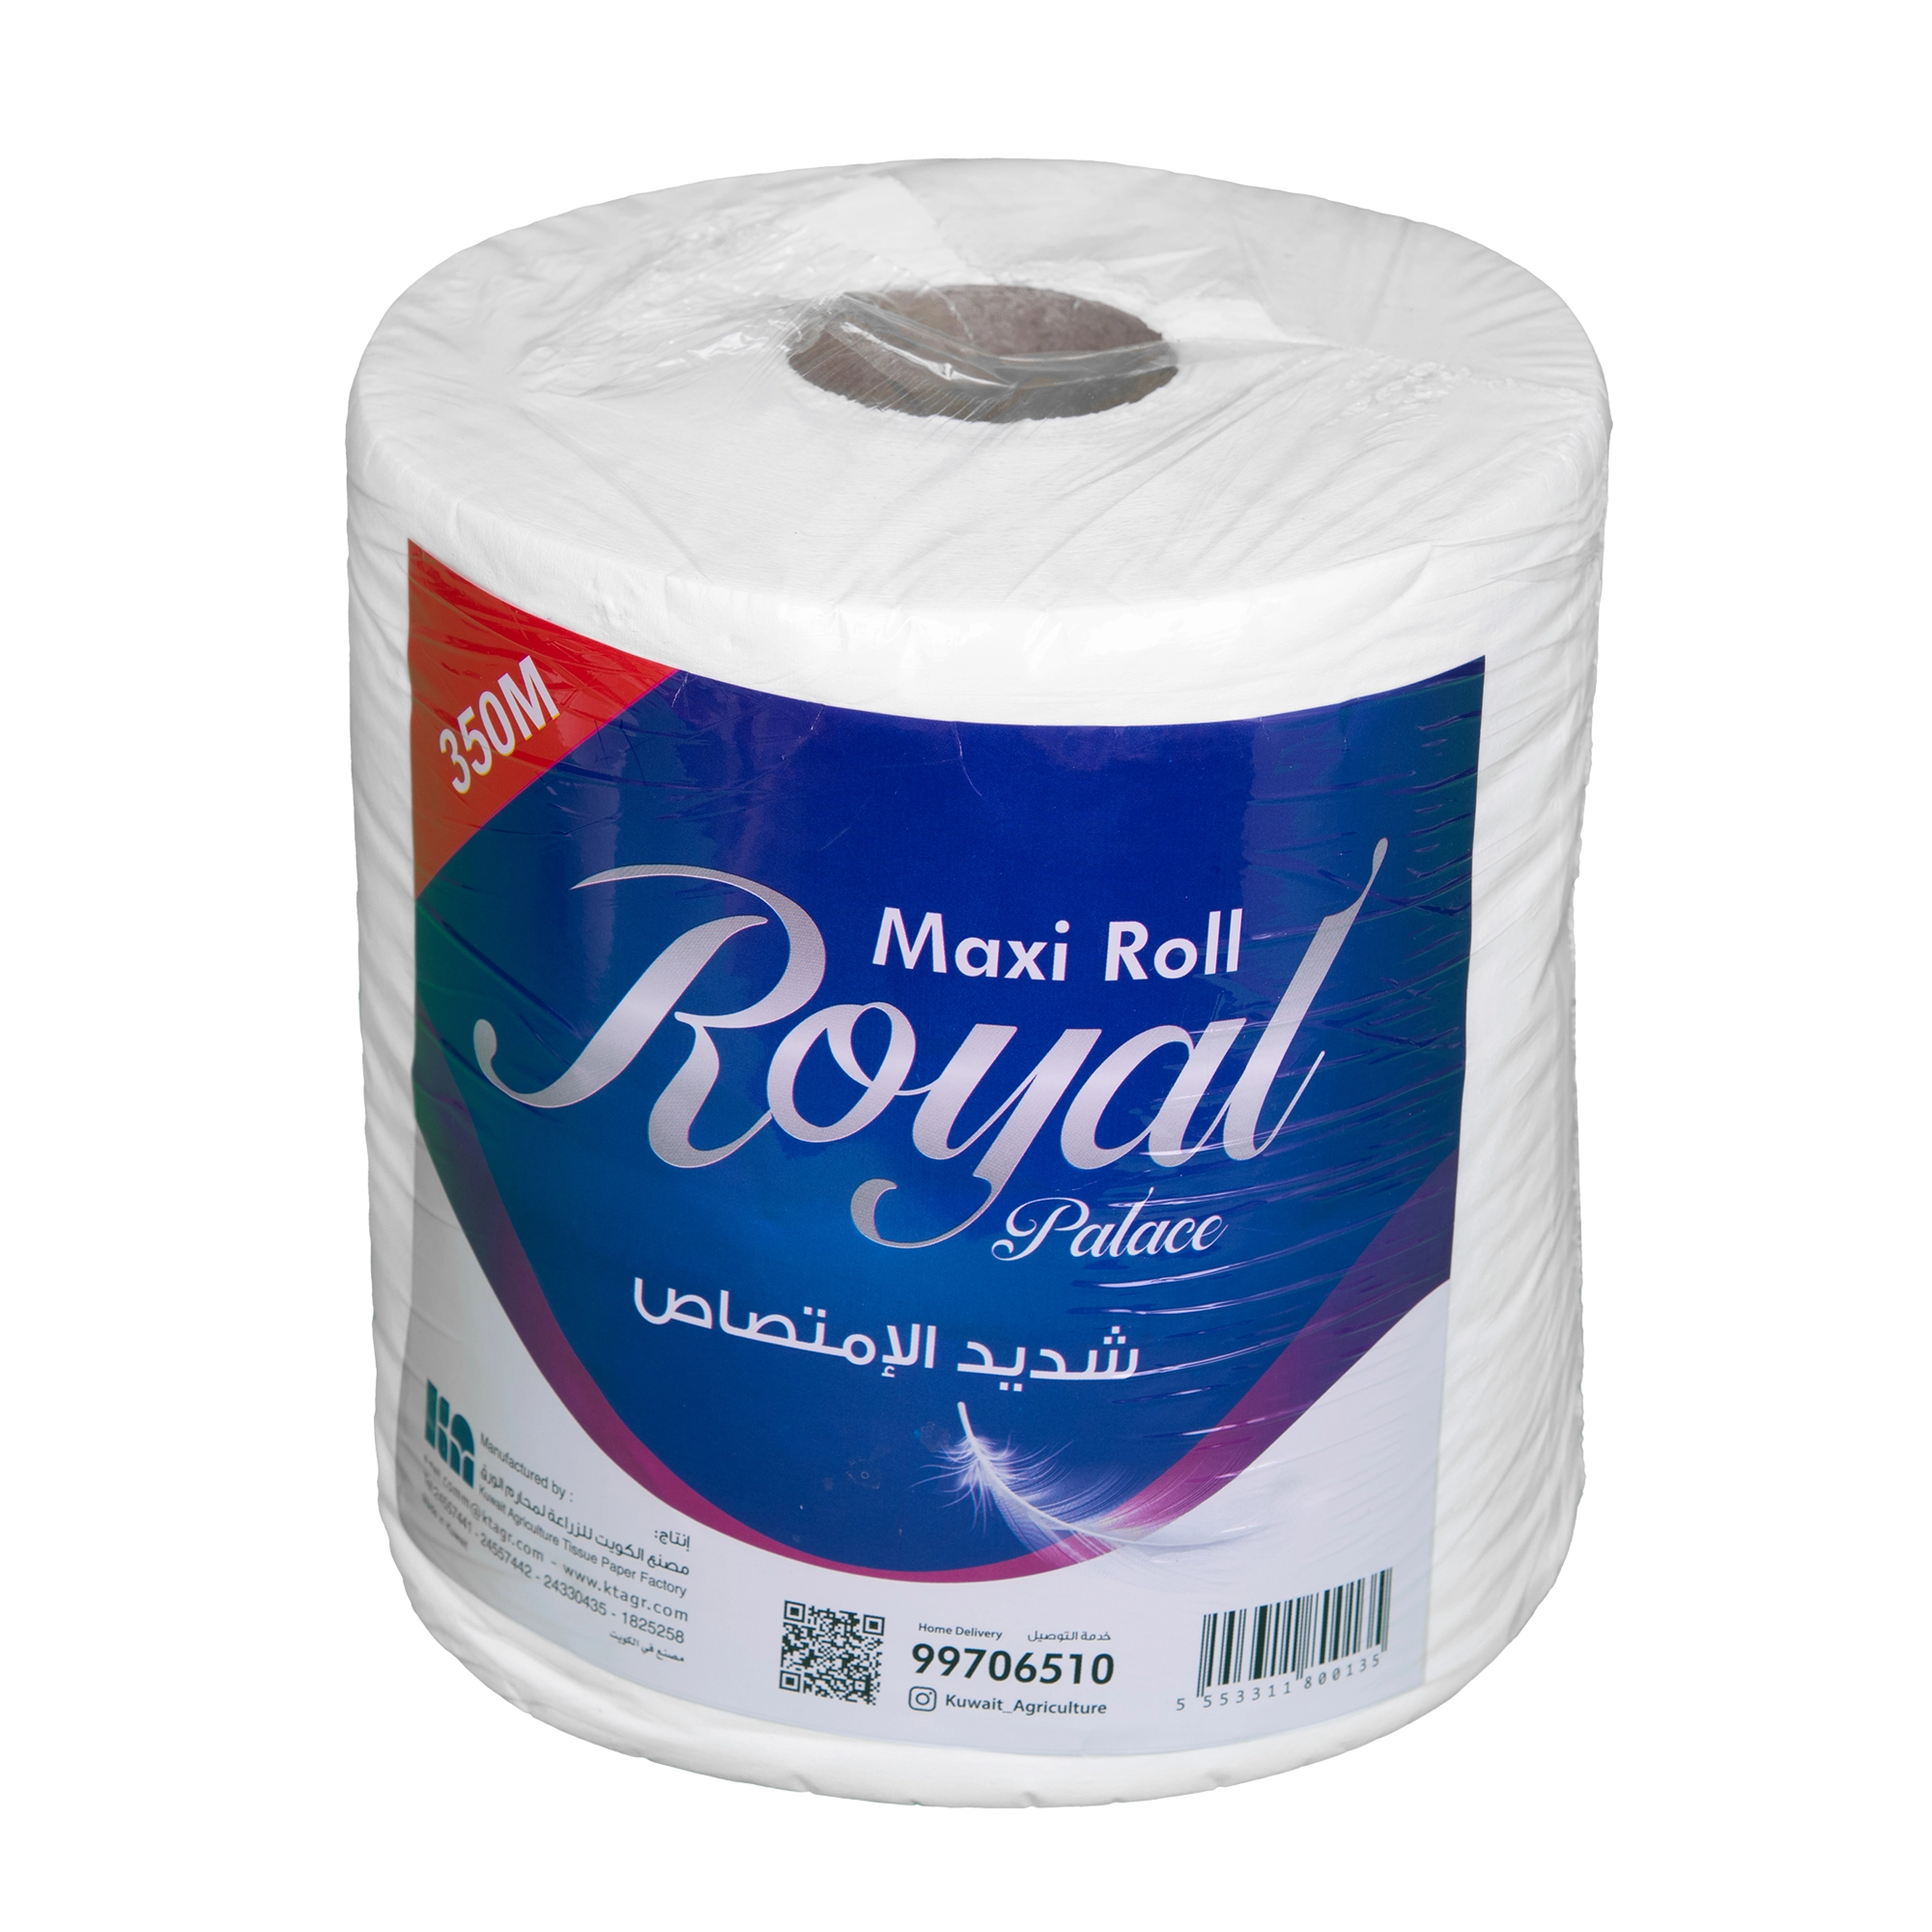 KAC -Royal Maxi Roll 350 mtr